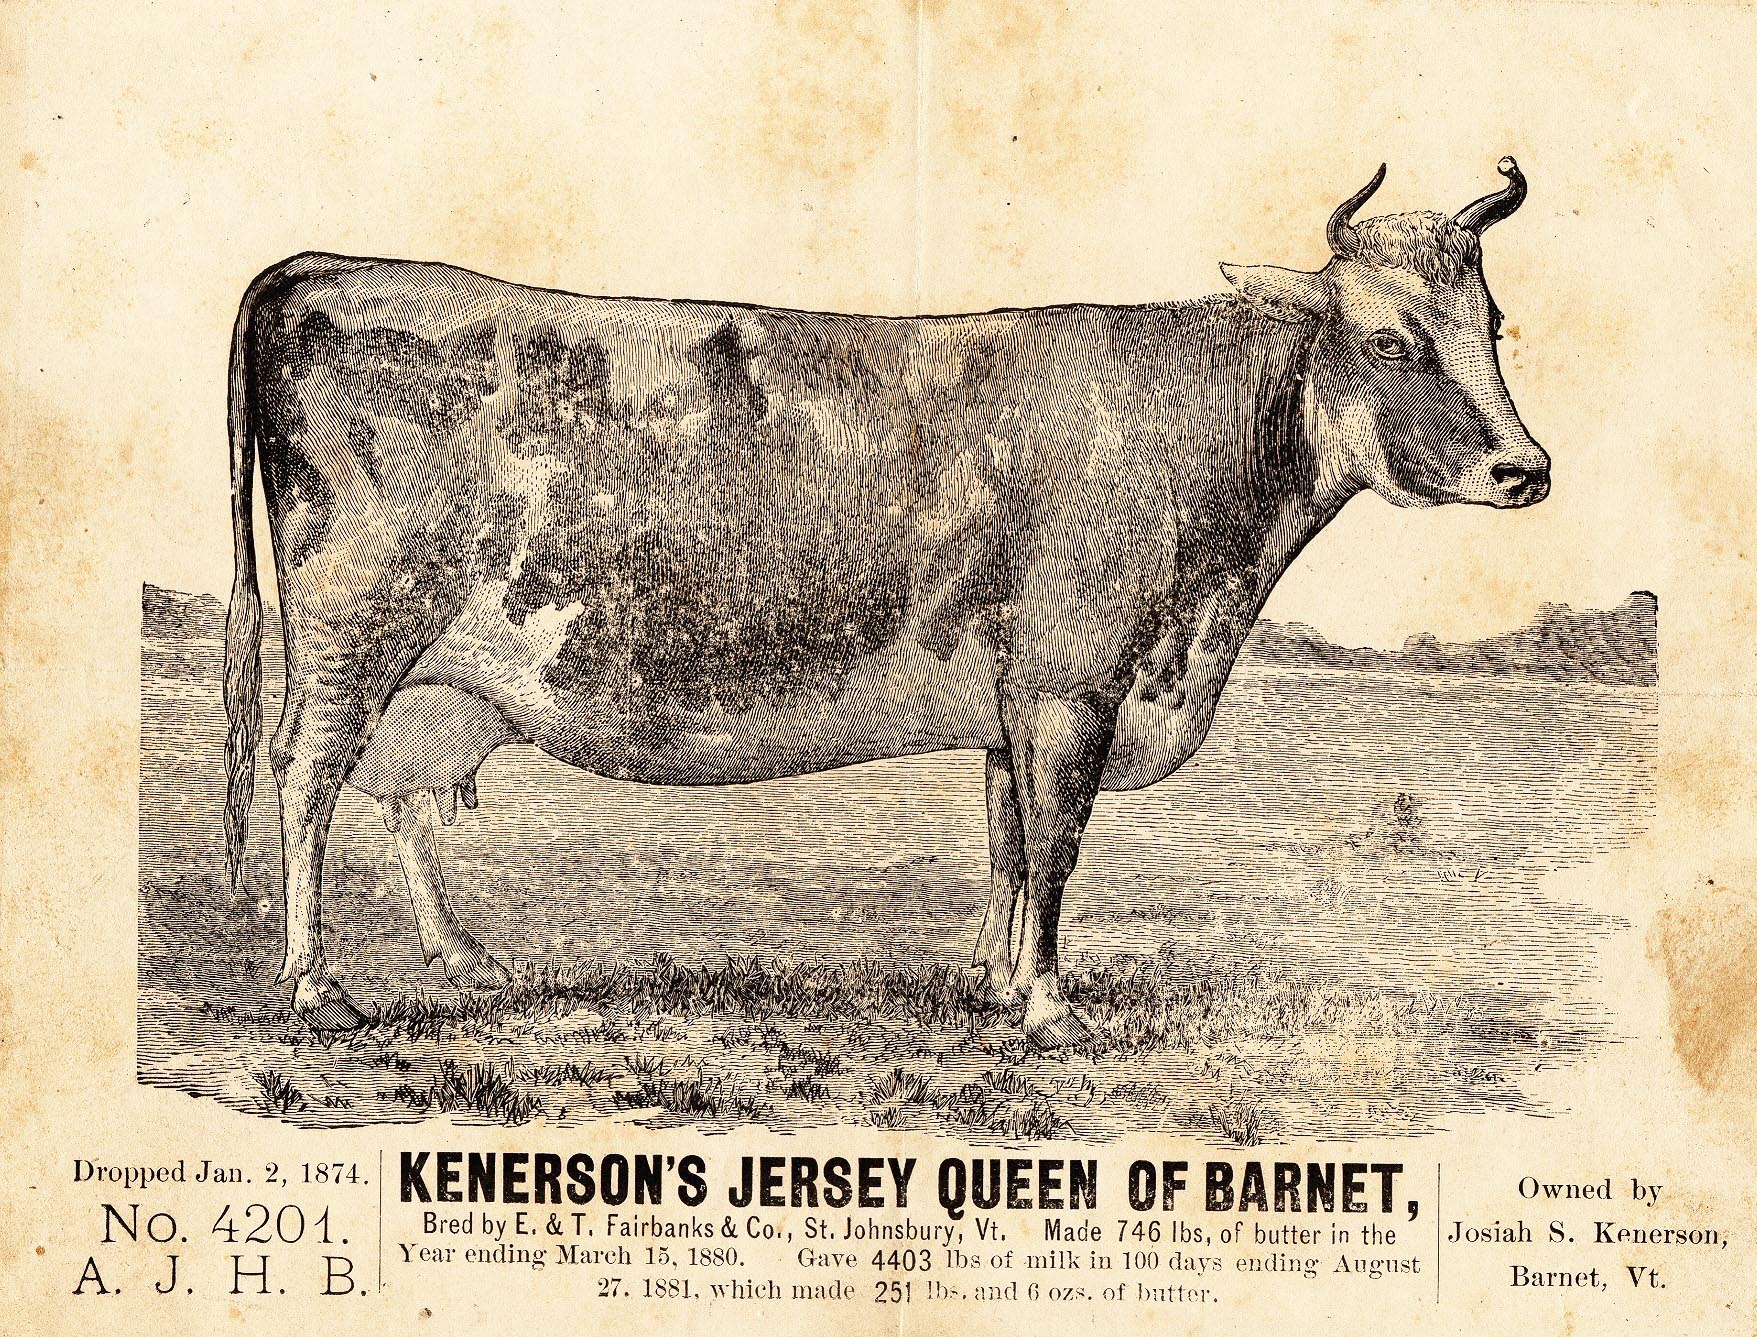 Kenerson's Jersey Queen of Barnet